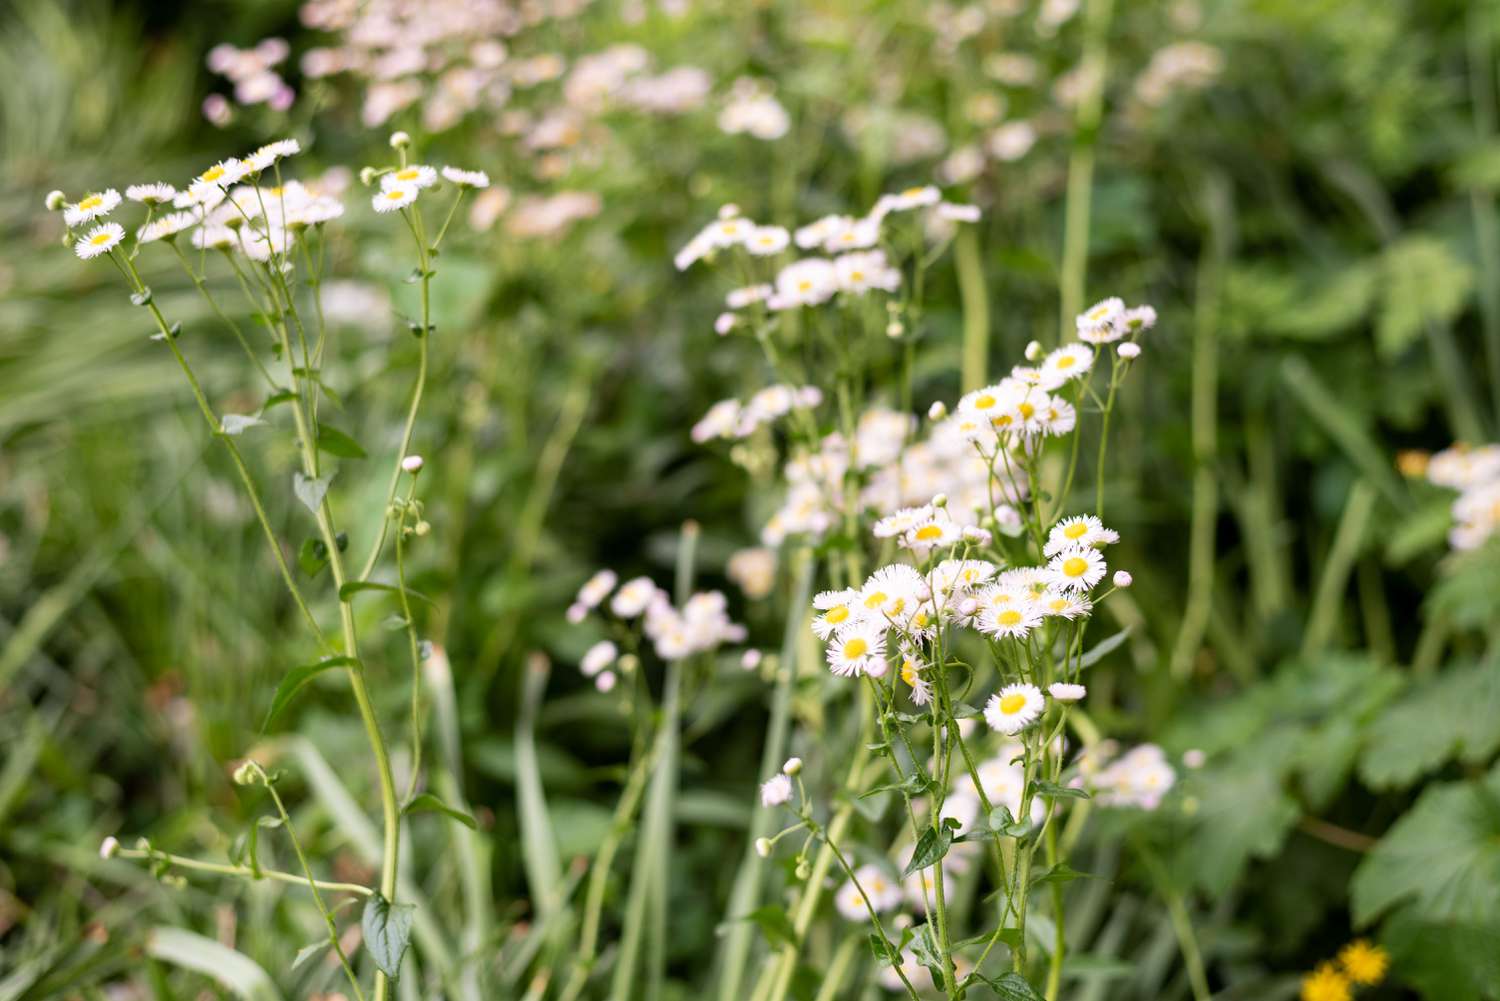 Planta fleabane mexicana con pequeñas flores blancas en tallos altos y delgados